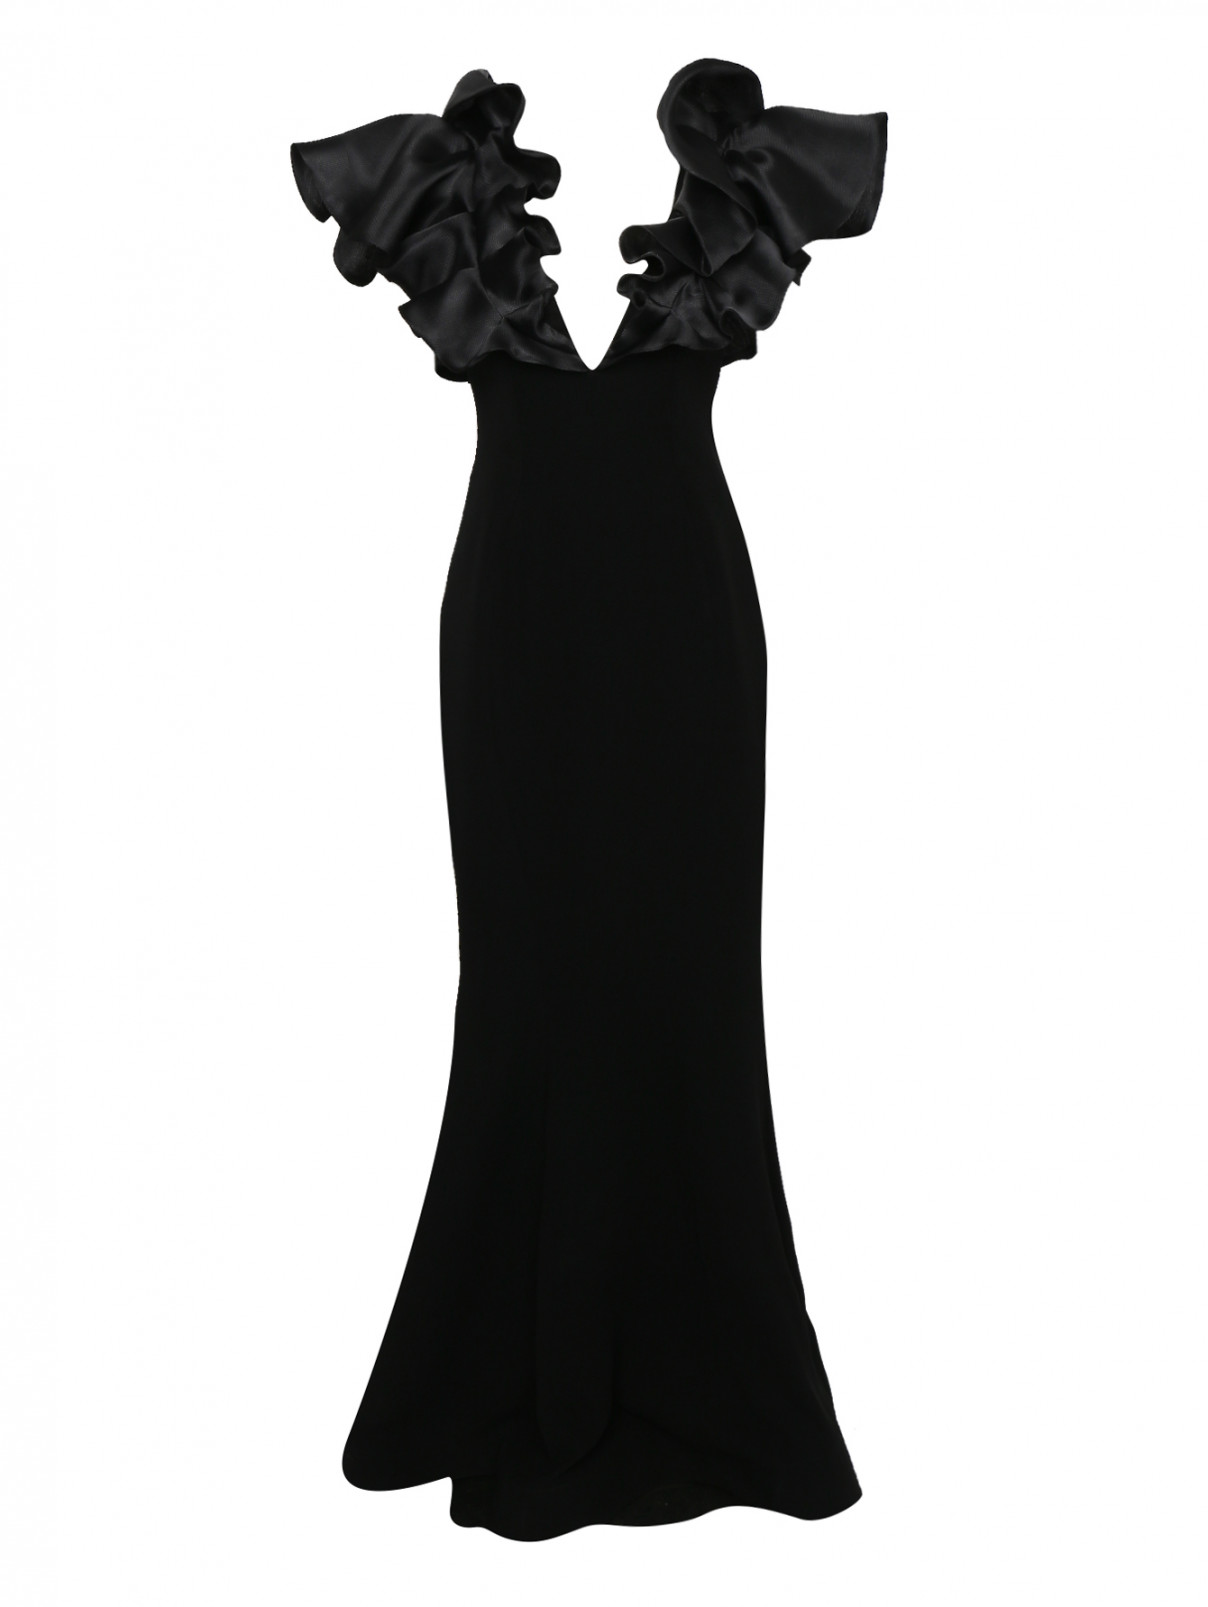 Платье макси, приталенное с объемными рукавами Gaby Charbachi  –  Общий вид  – Цвет:  Черный